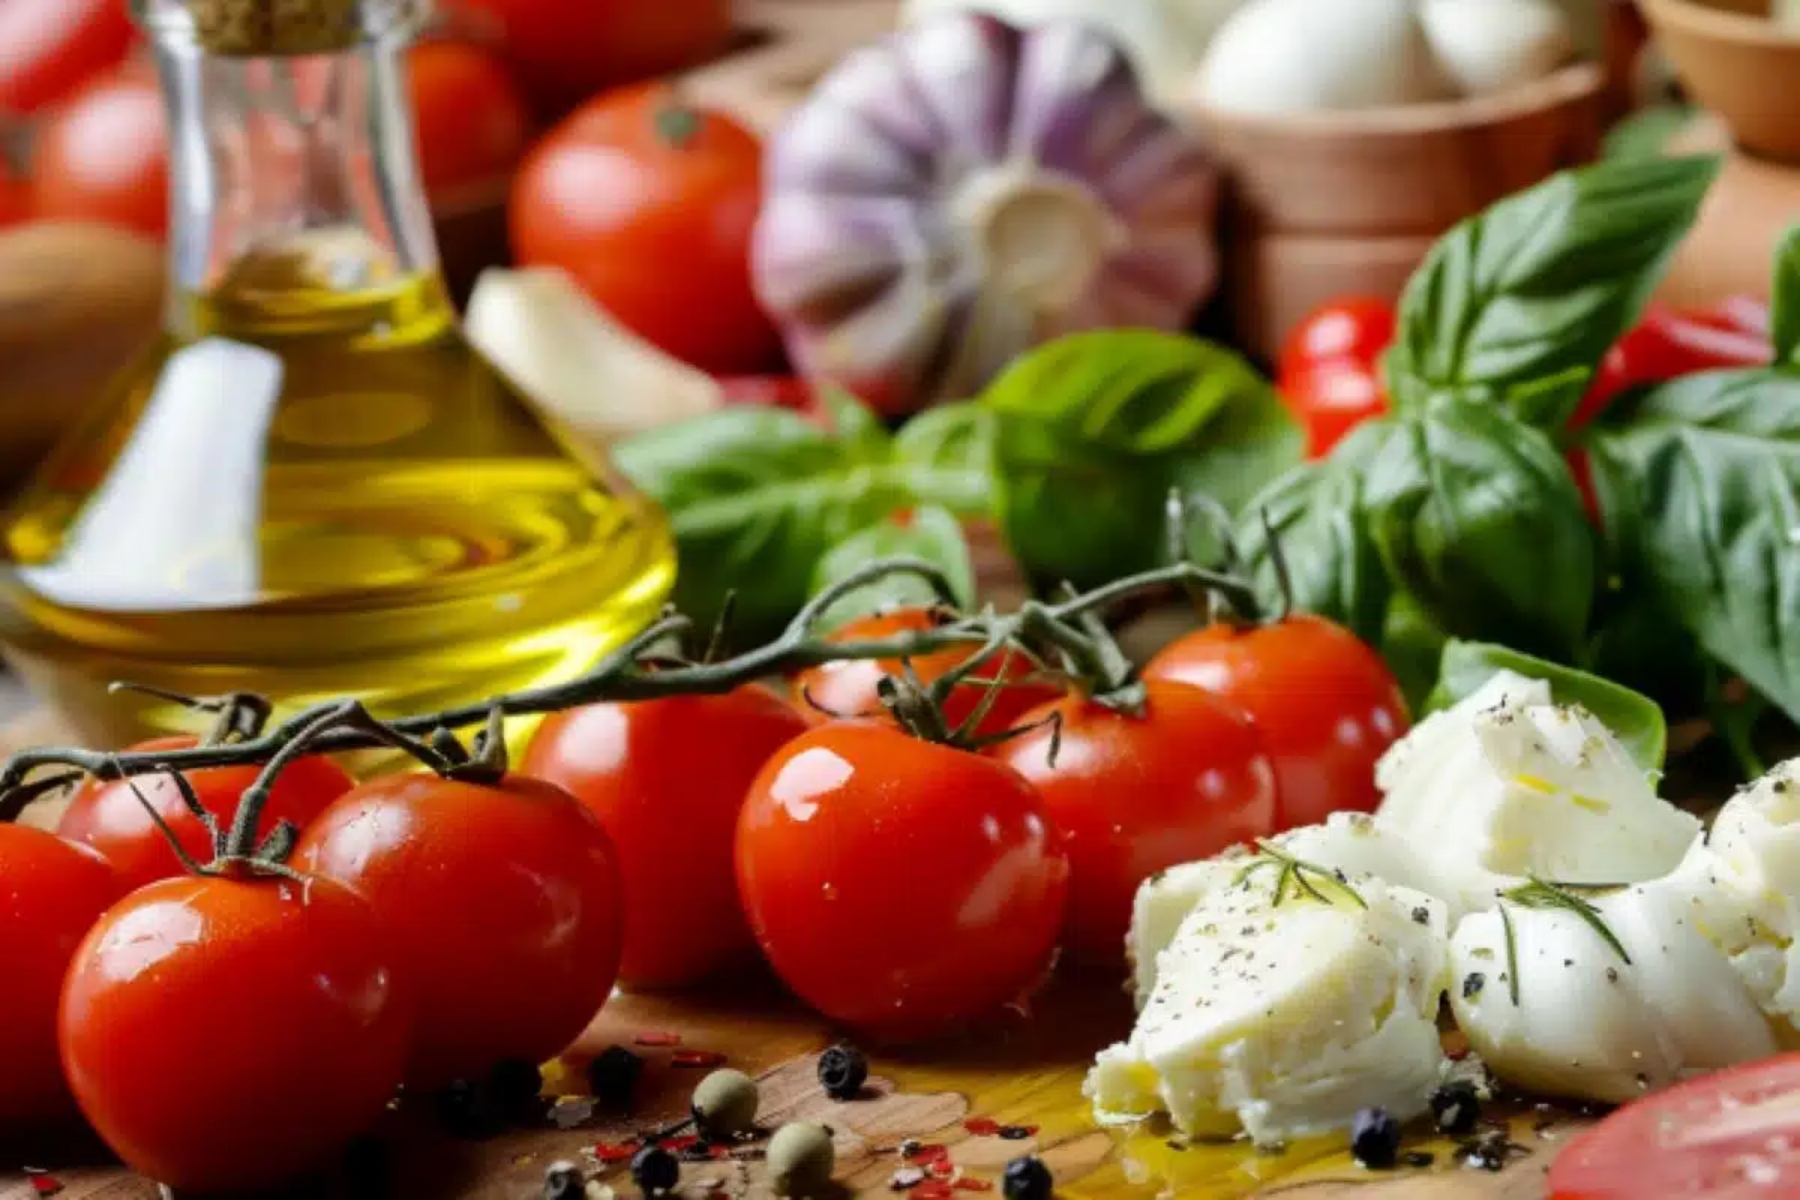 Μεσογειακή διατροφή: Πράγματι μειώνει τον κίνδυνο θνησιμότητας κατά 23% στις γυναίκες;